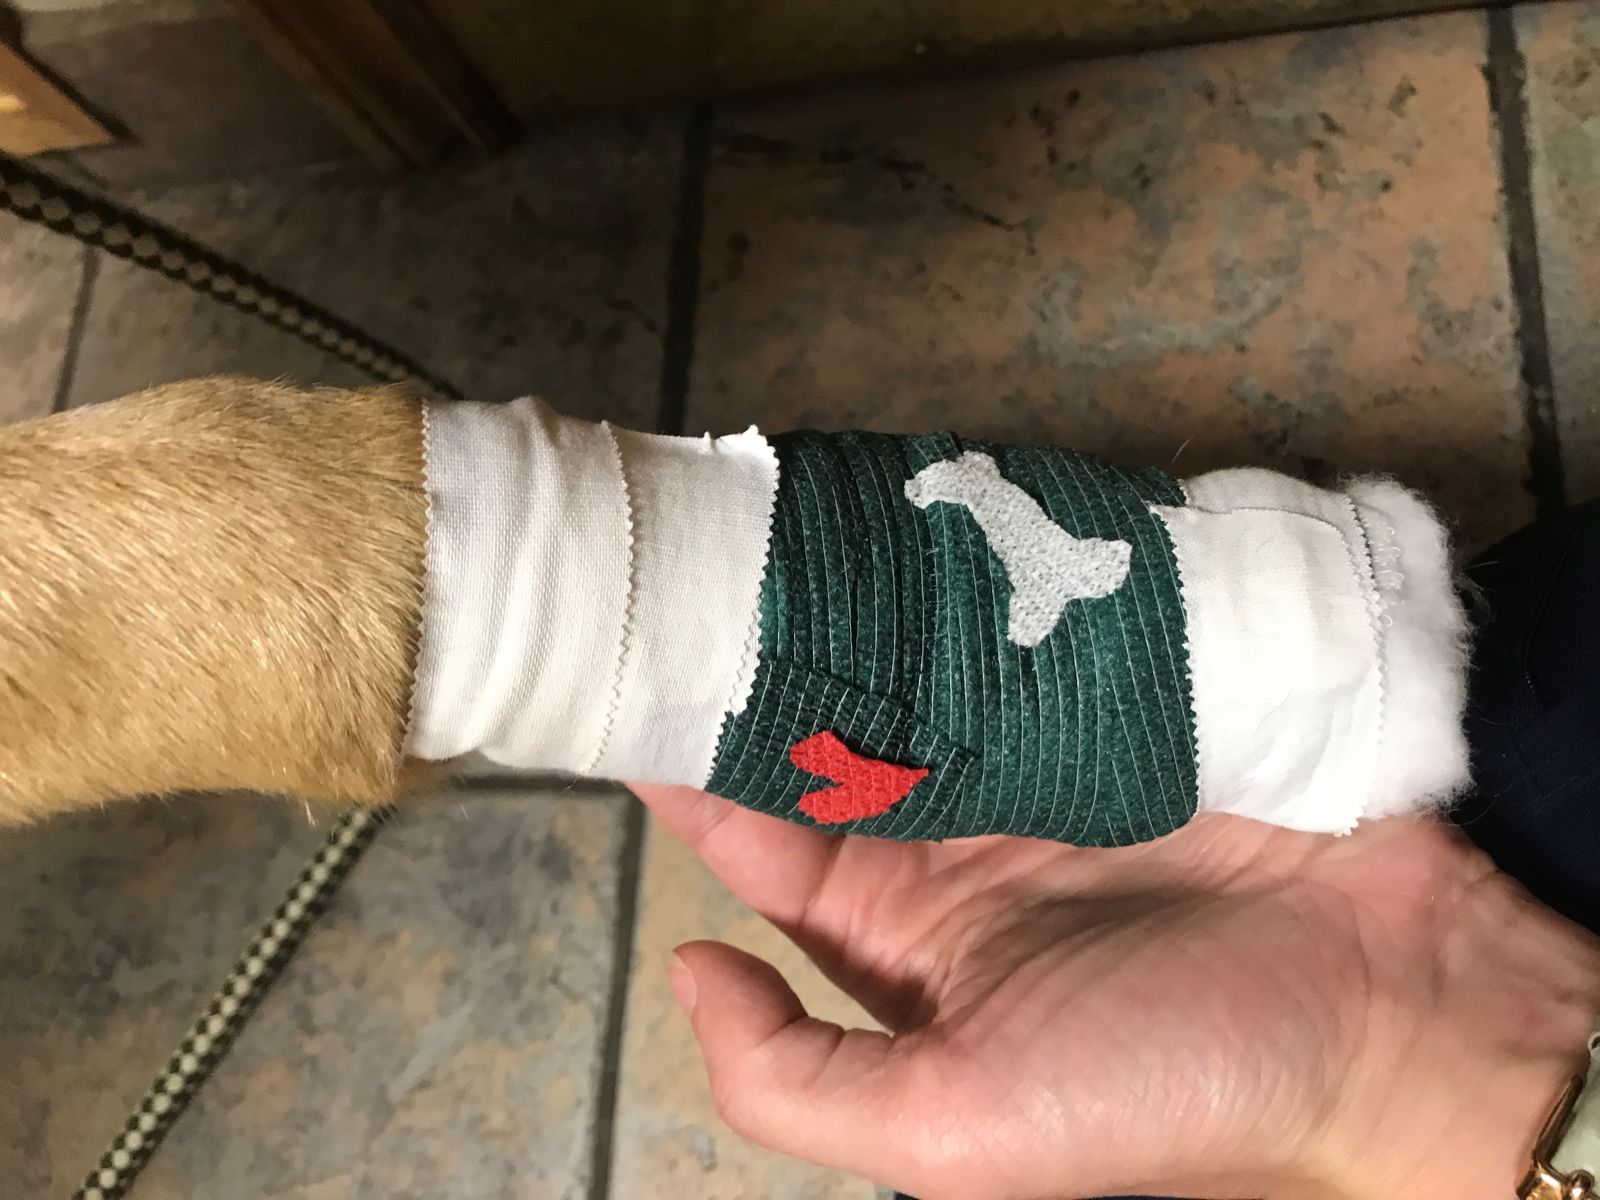 Bandage-wrapped dog paw